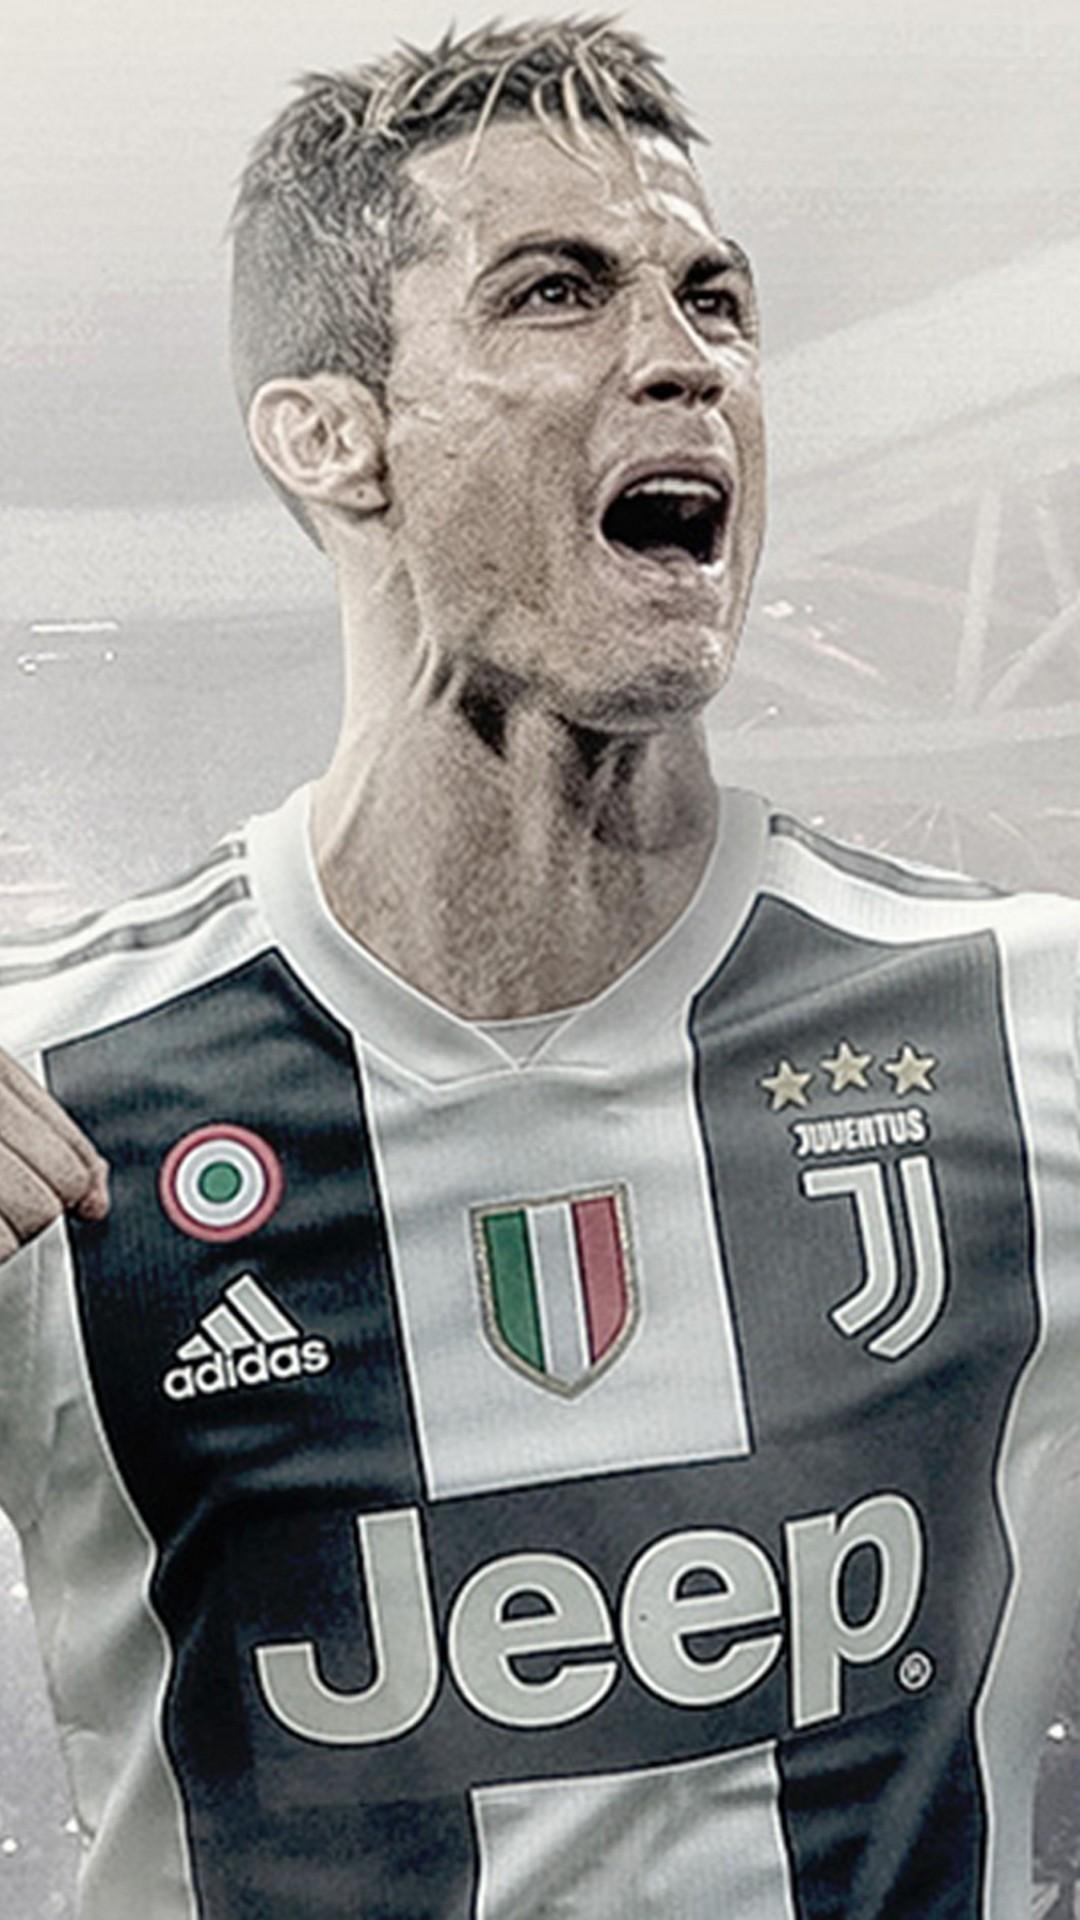 Free download Wallpaper Android C Ronaldo Juventus 2019